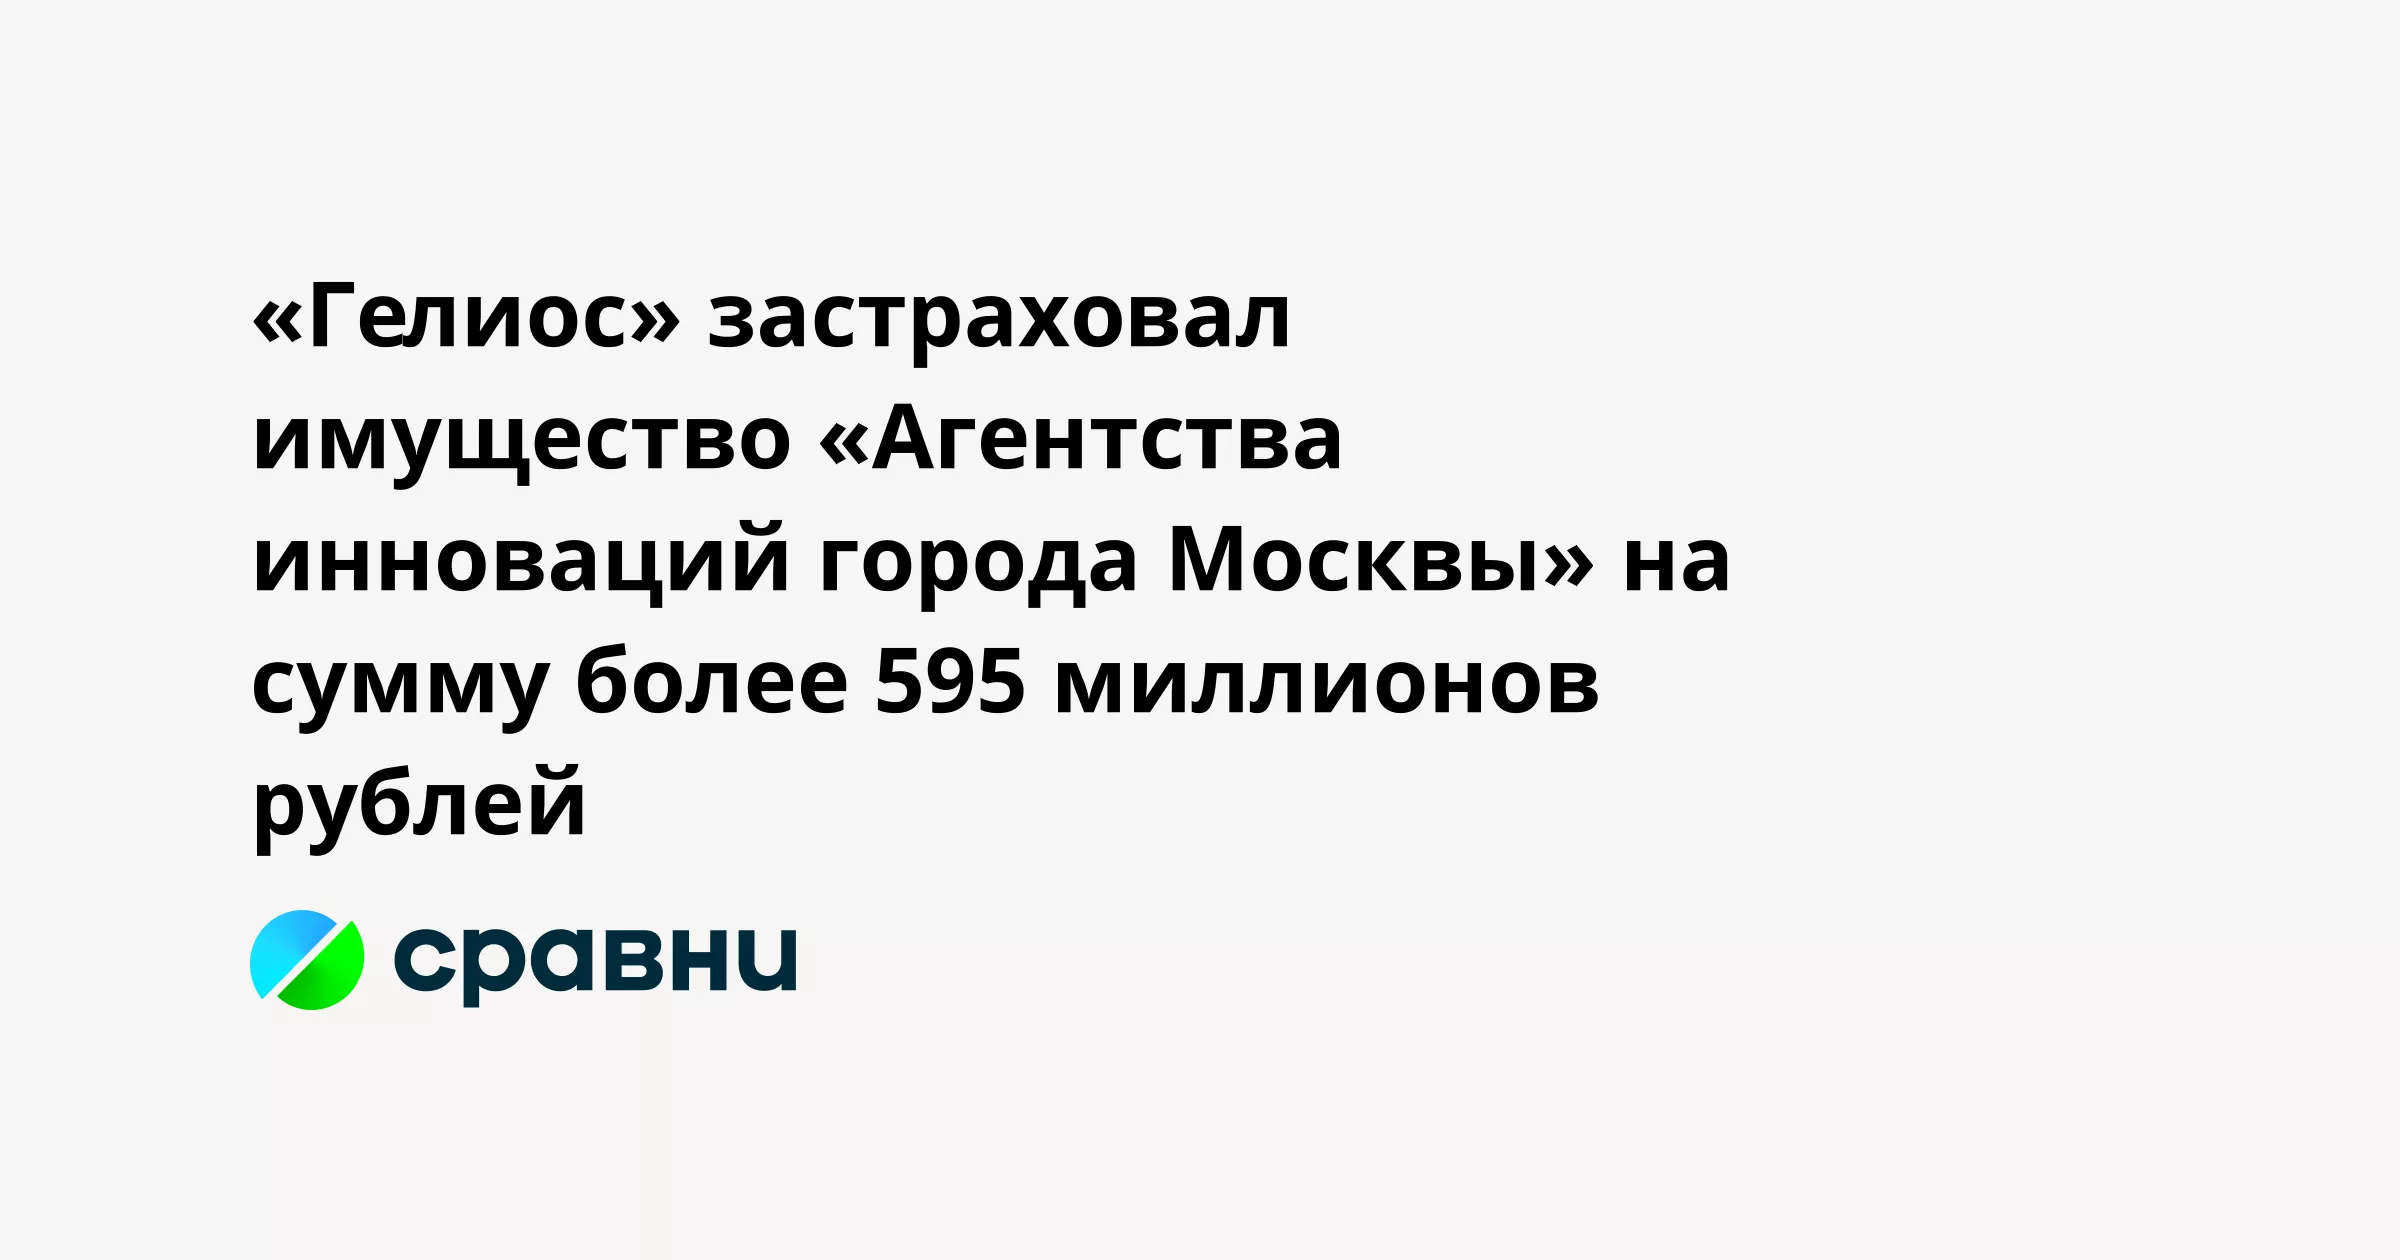 «Гелиос» застраховал имущество «Агентства инноваций города Москвы» на сумму более 595 миллионов рублей